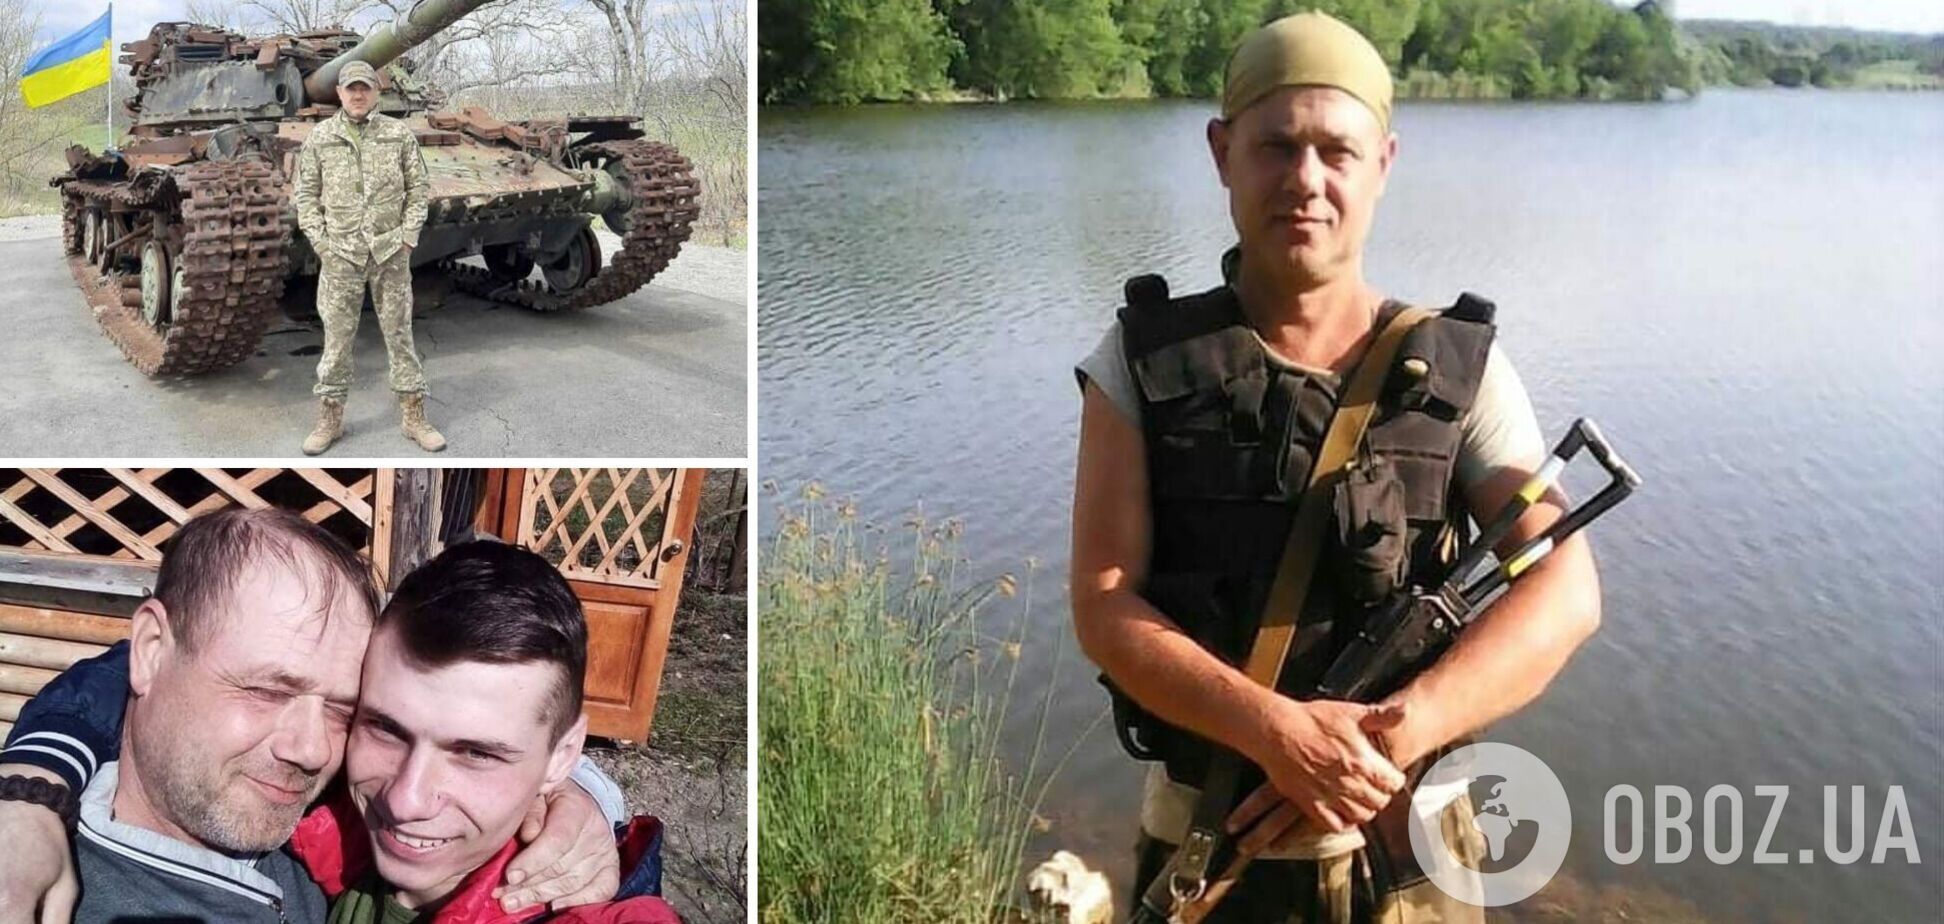 Хотел, чтобы война закончилась: на Донбассе погиб опытный боец ВСУ и отец троих детей